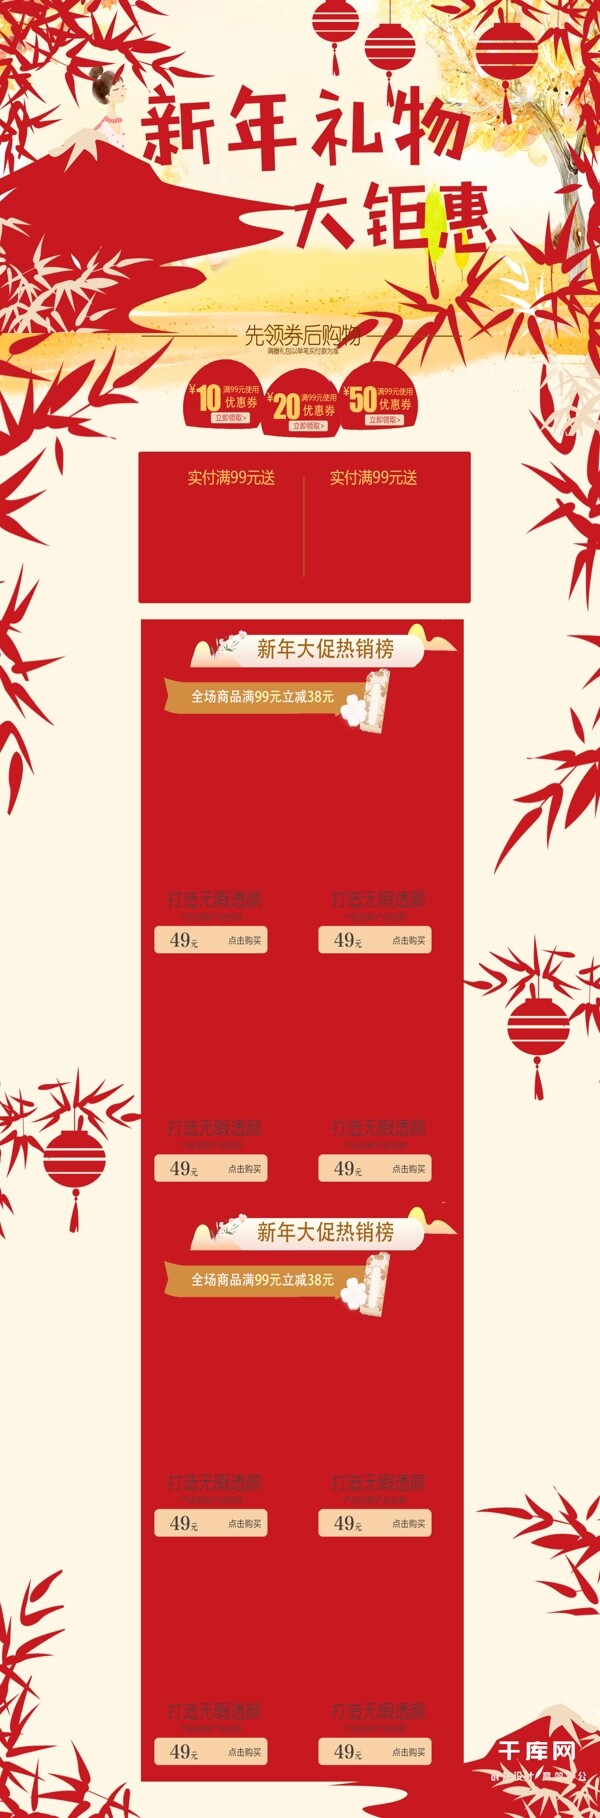 红米色化妆品促销天猫淘宝电商首页模板